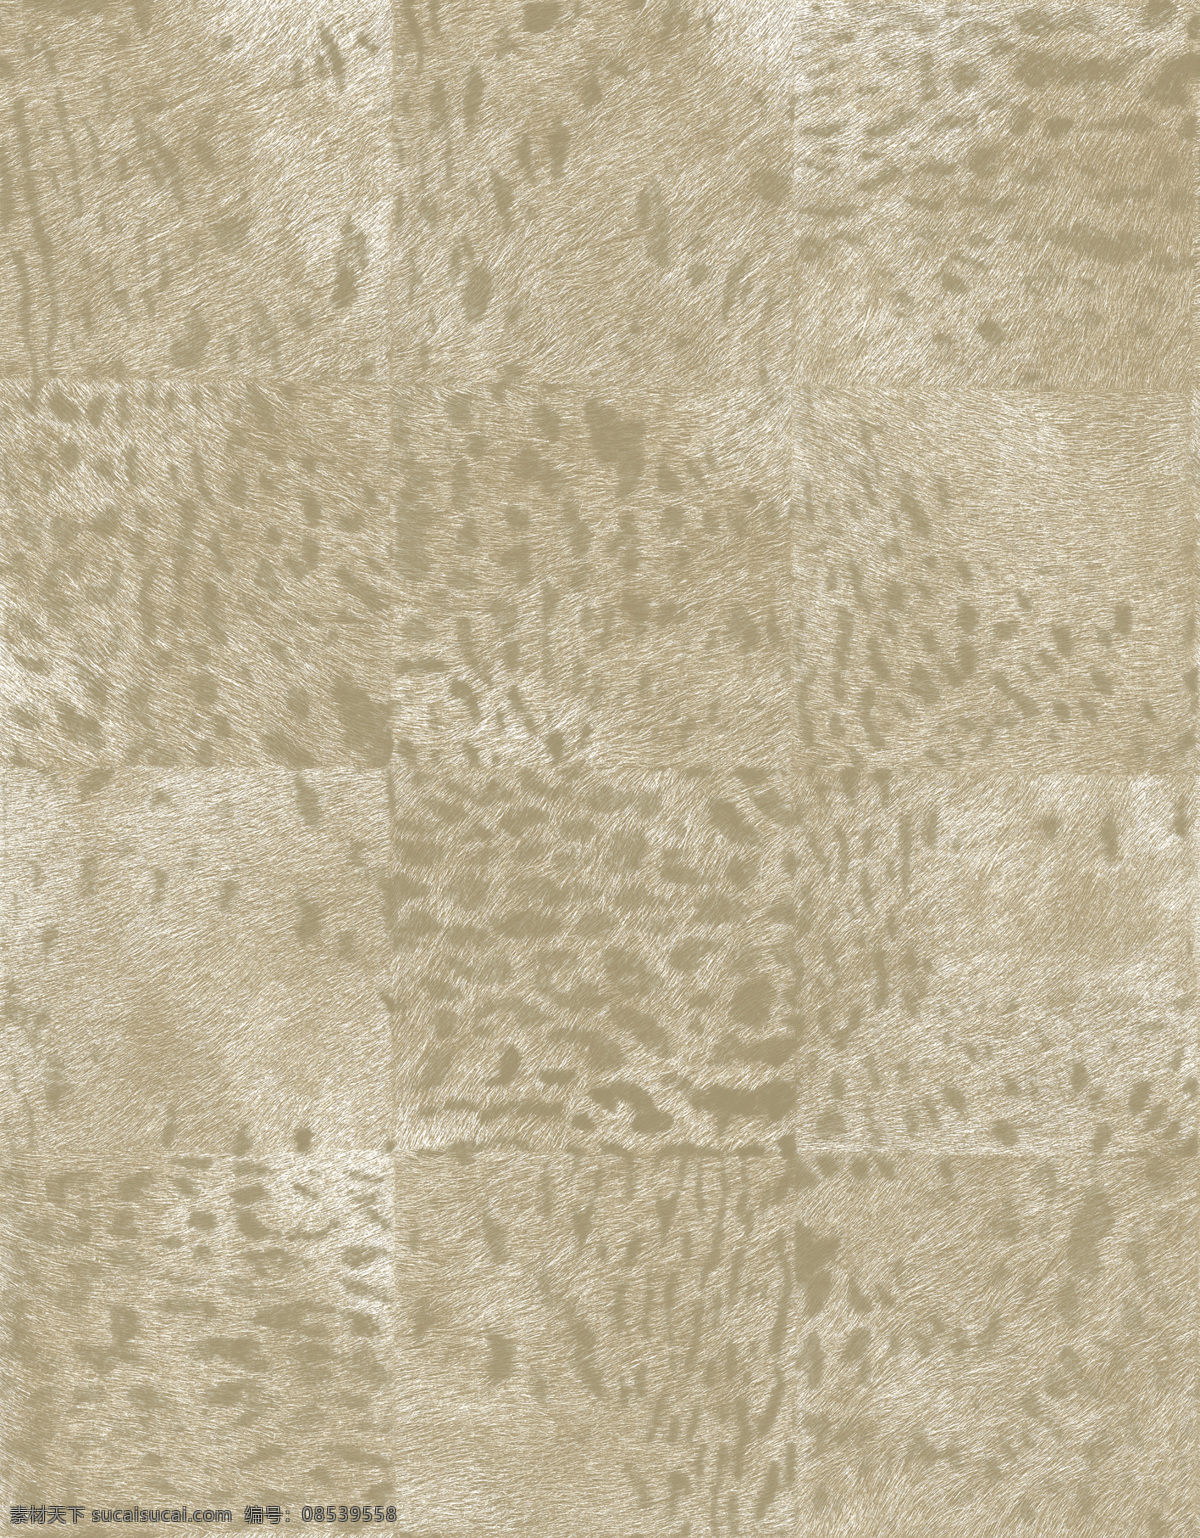 地毯贴图素材 3d材质贴图 地毯材质贴图 纹理 图案 地毯 材质 贴图 地毯贴图下载